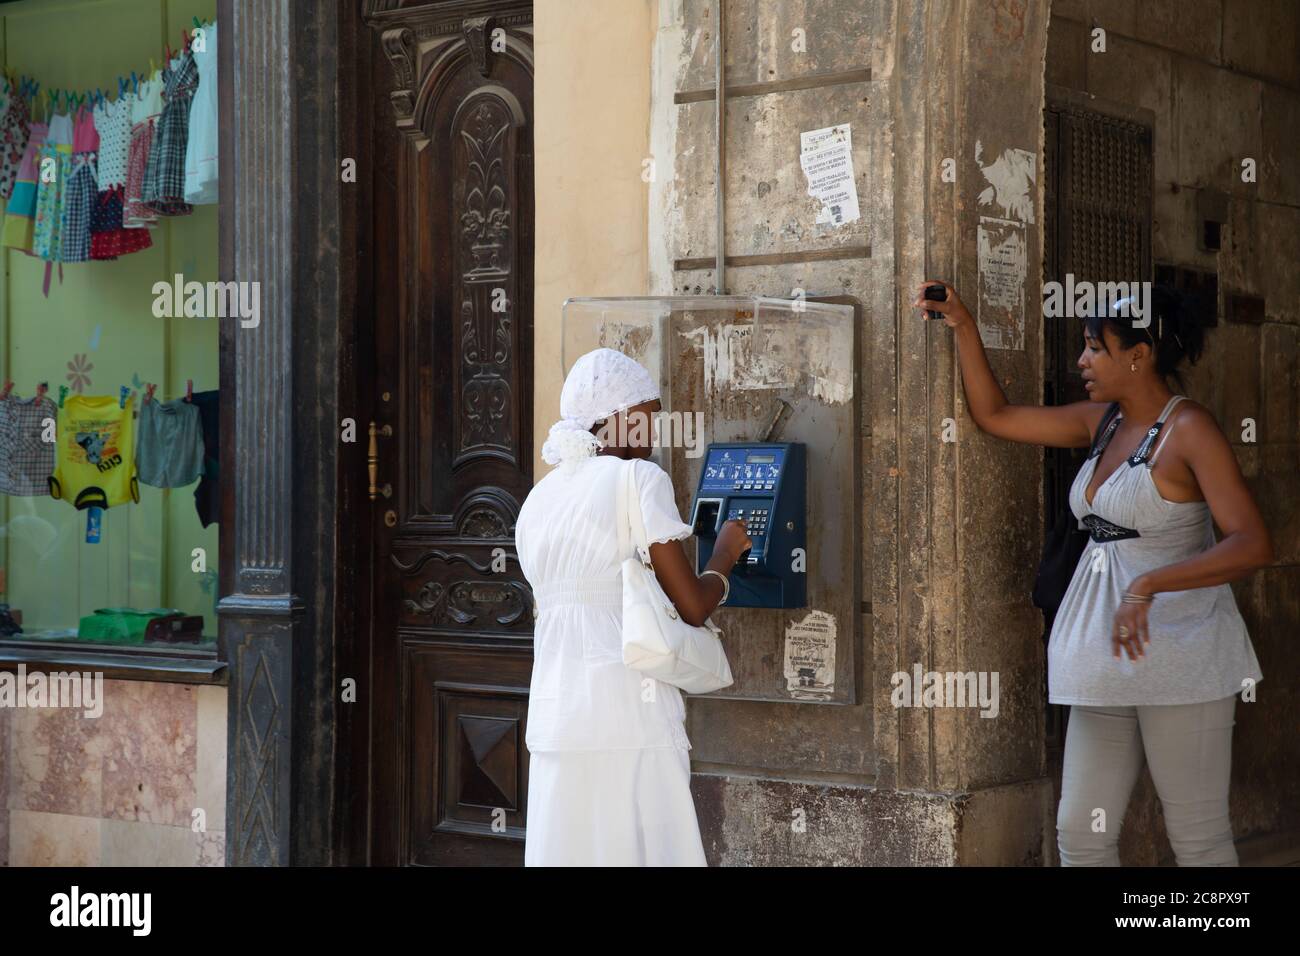 L'Avana / Cuba - 04.15.2015: Giovane cubana che indossa un abito bianco Santeria facendo una telefonata su un telefono pubblico Foto Stock